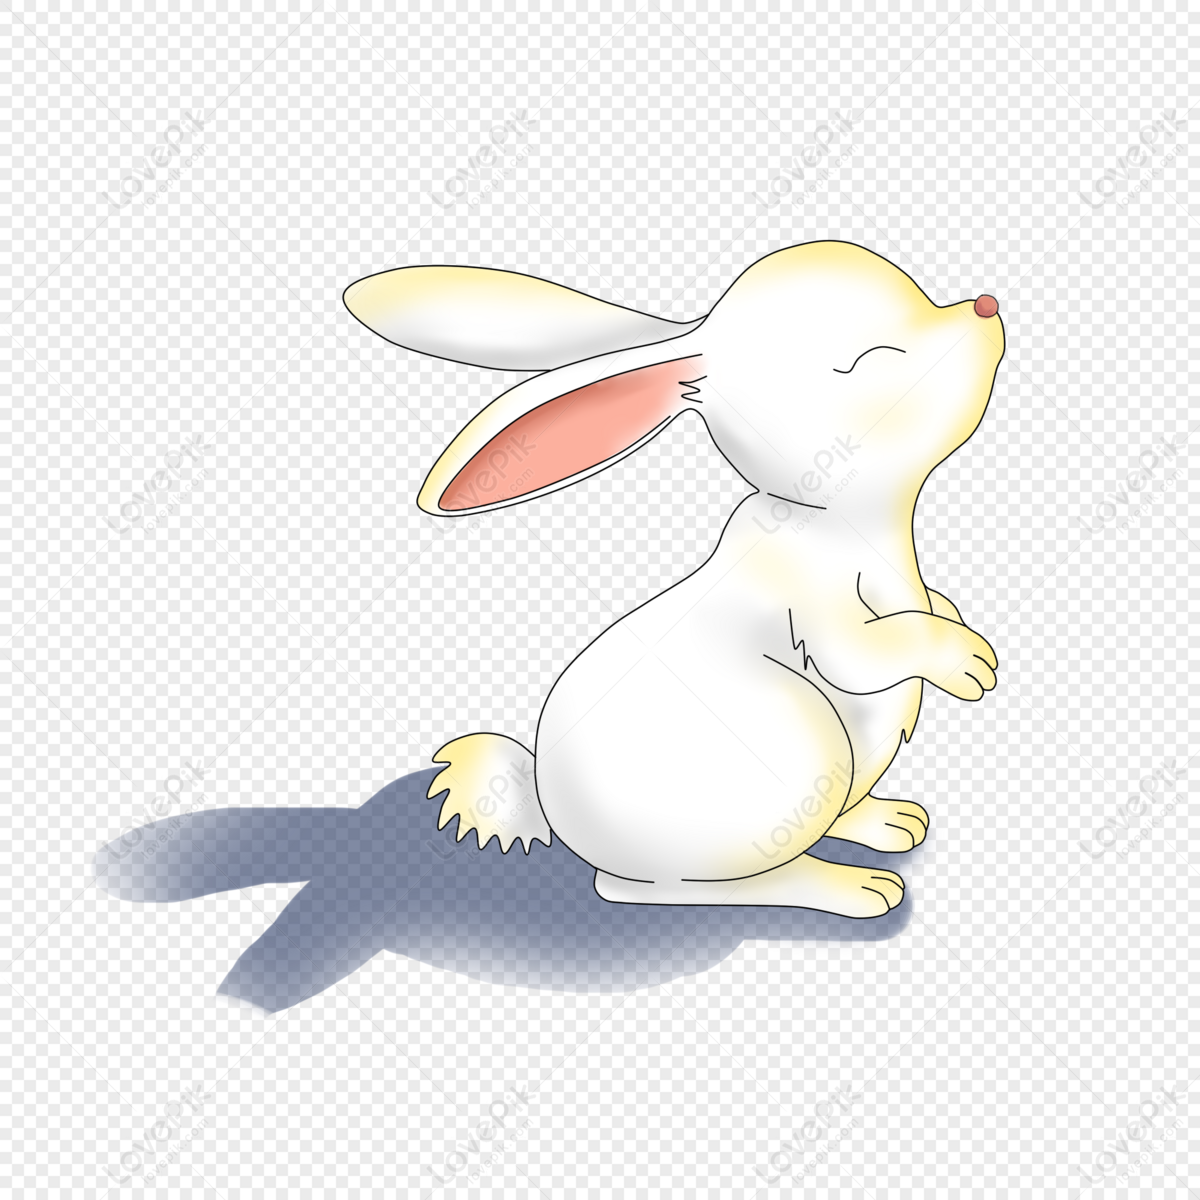 Hình ảnh con thỏ trong đời sống văn hóa , tín ngưỡng con người - Thỏ cảnh  Hà Nội | Cute bunny pictures, Cute creatures, Funny animals